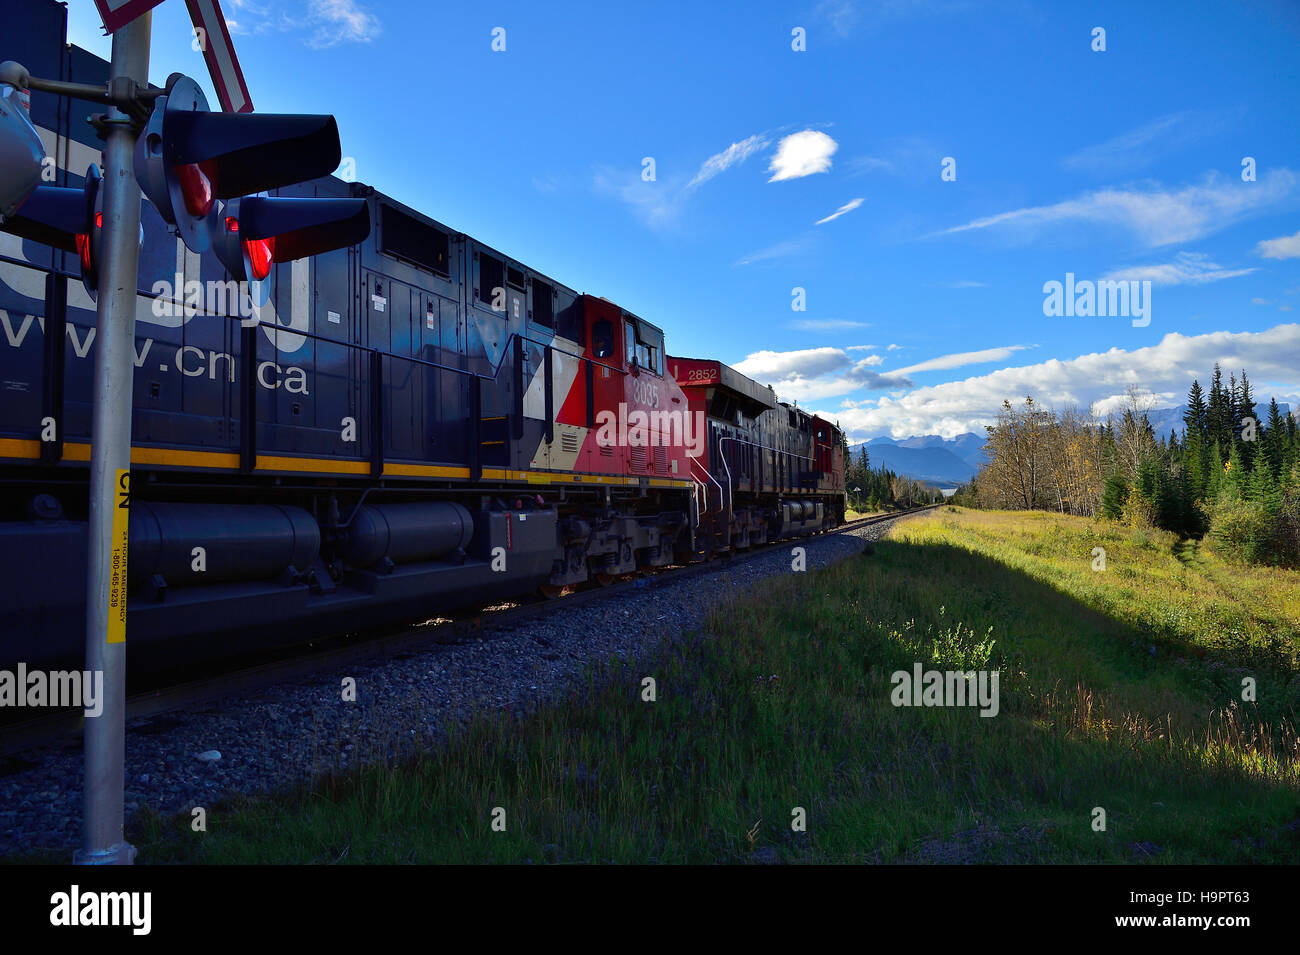 Un train de marchandises du C.N., voyageant vers les montagnes rocheuses de l'Alberta, Canada. Banque D'Images